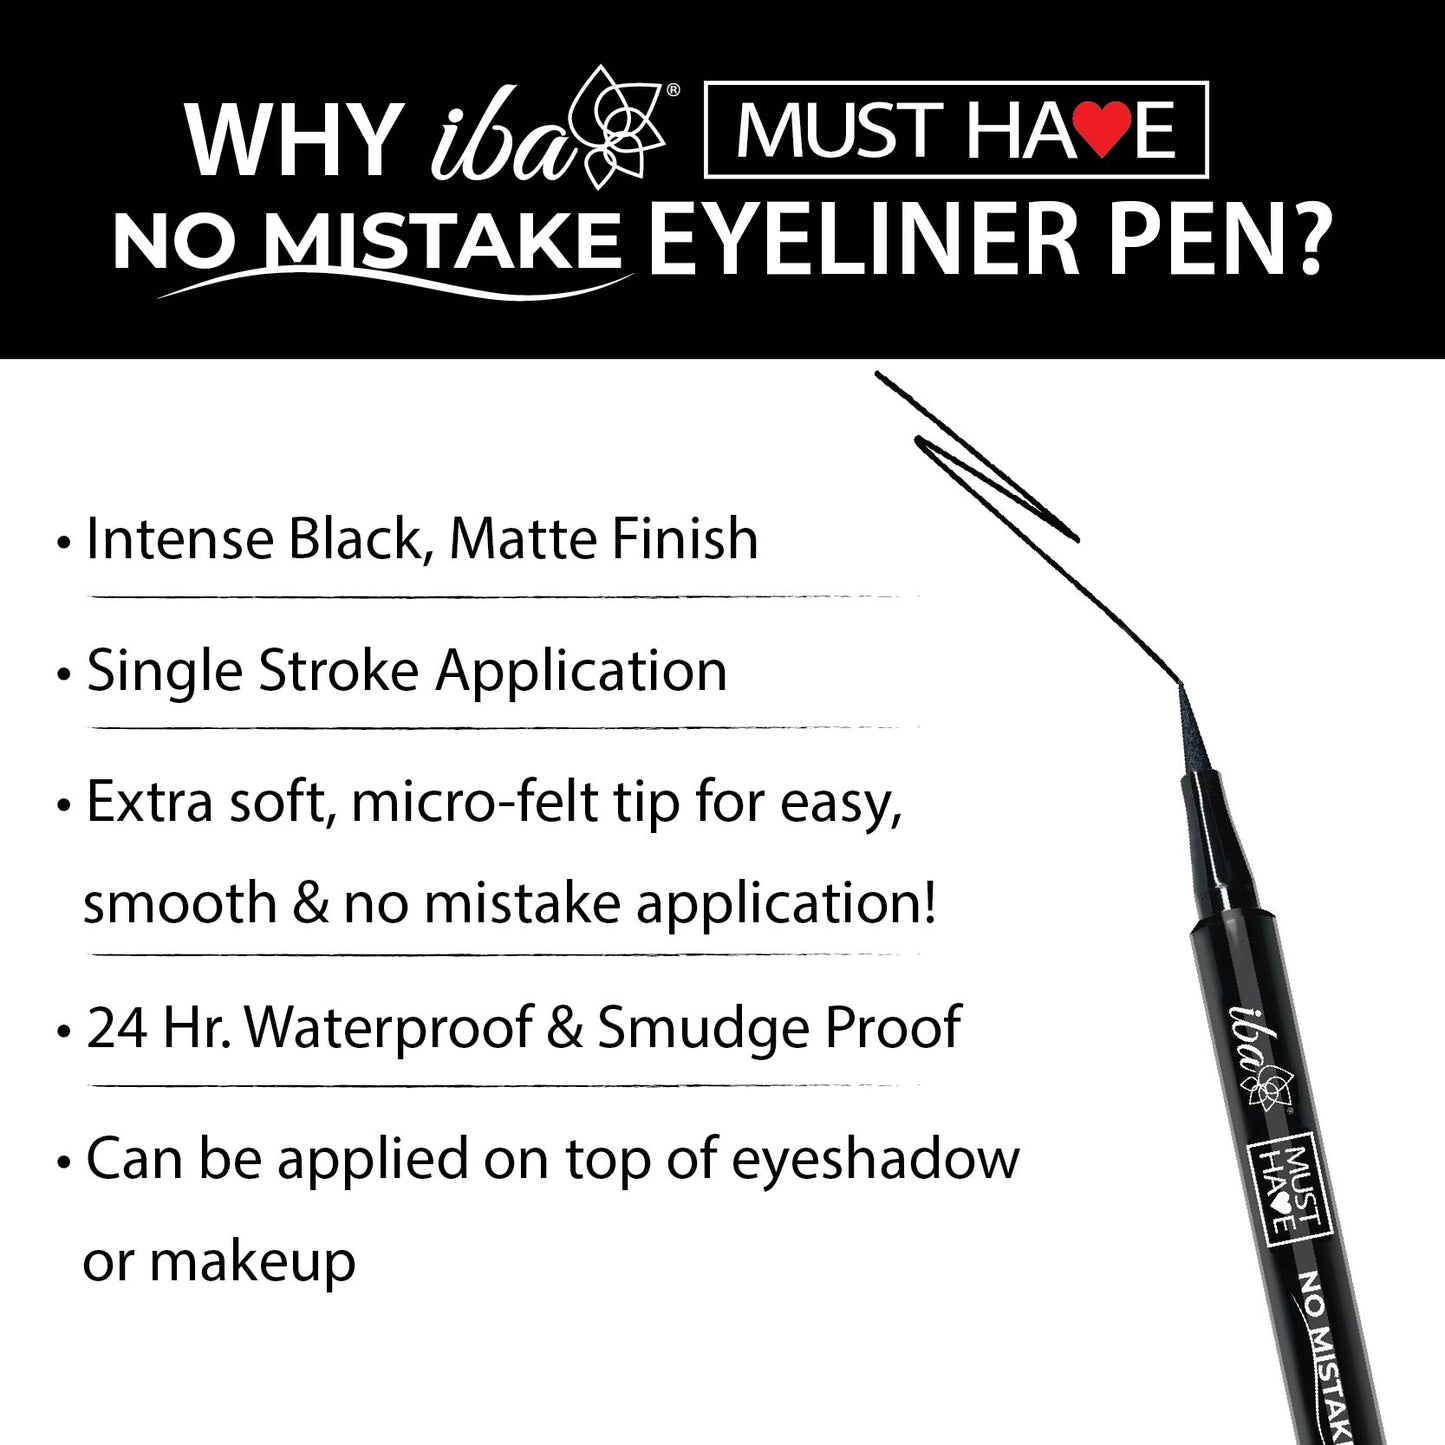 Iba Must Have No Mistake Eyeliner Pen Description